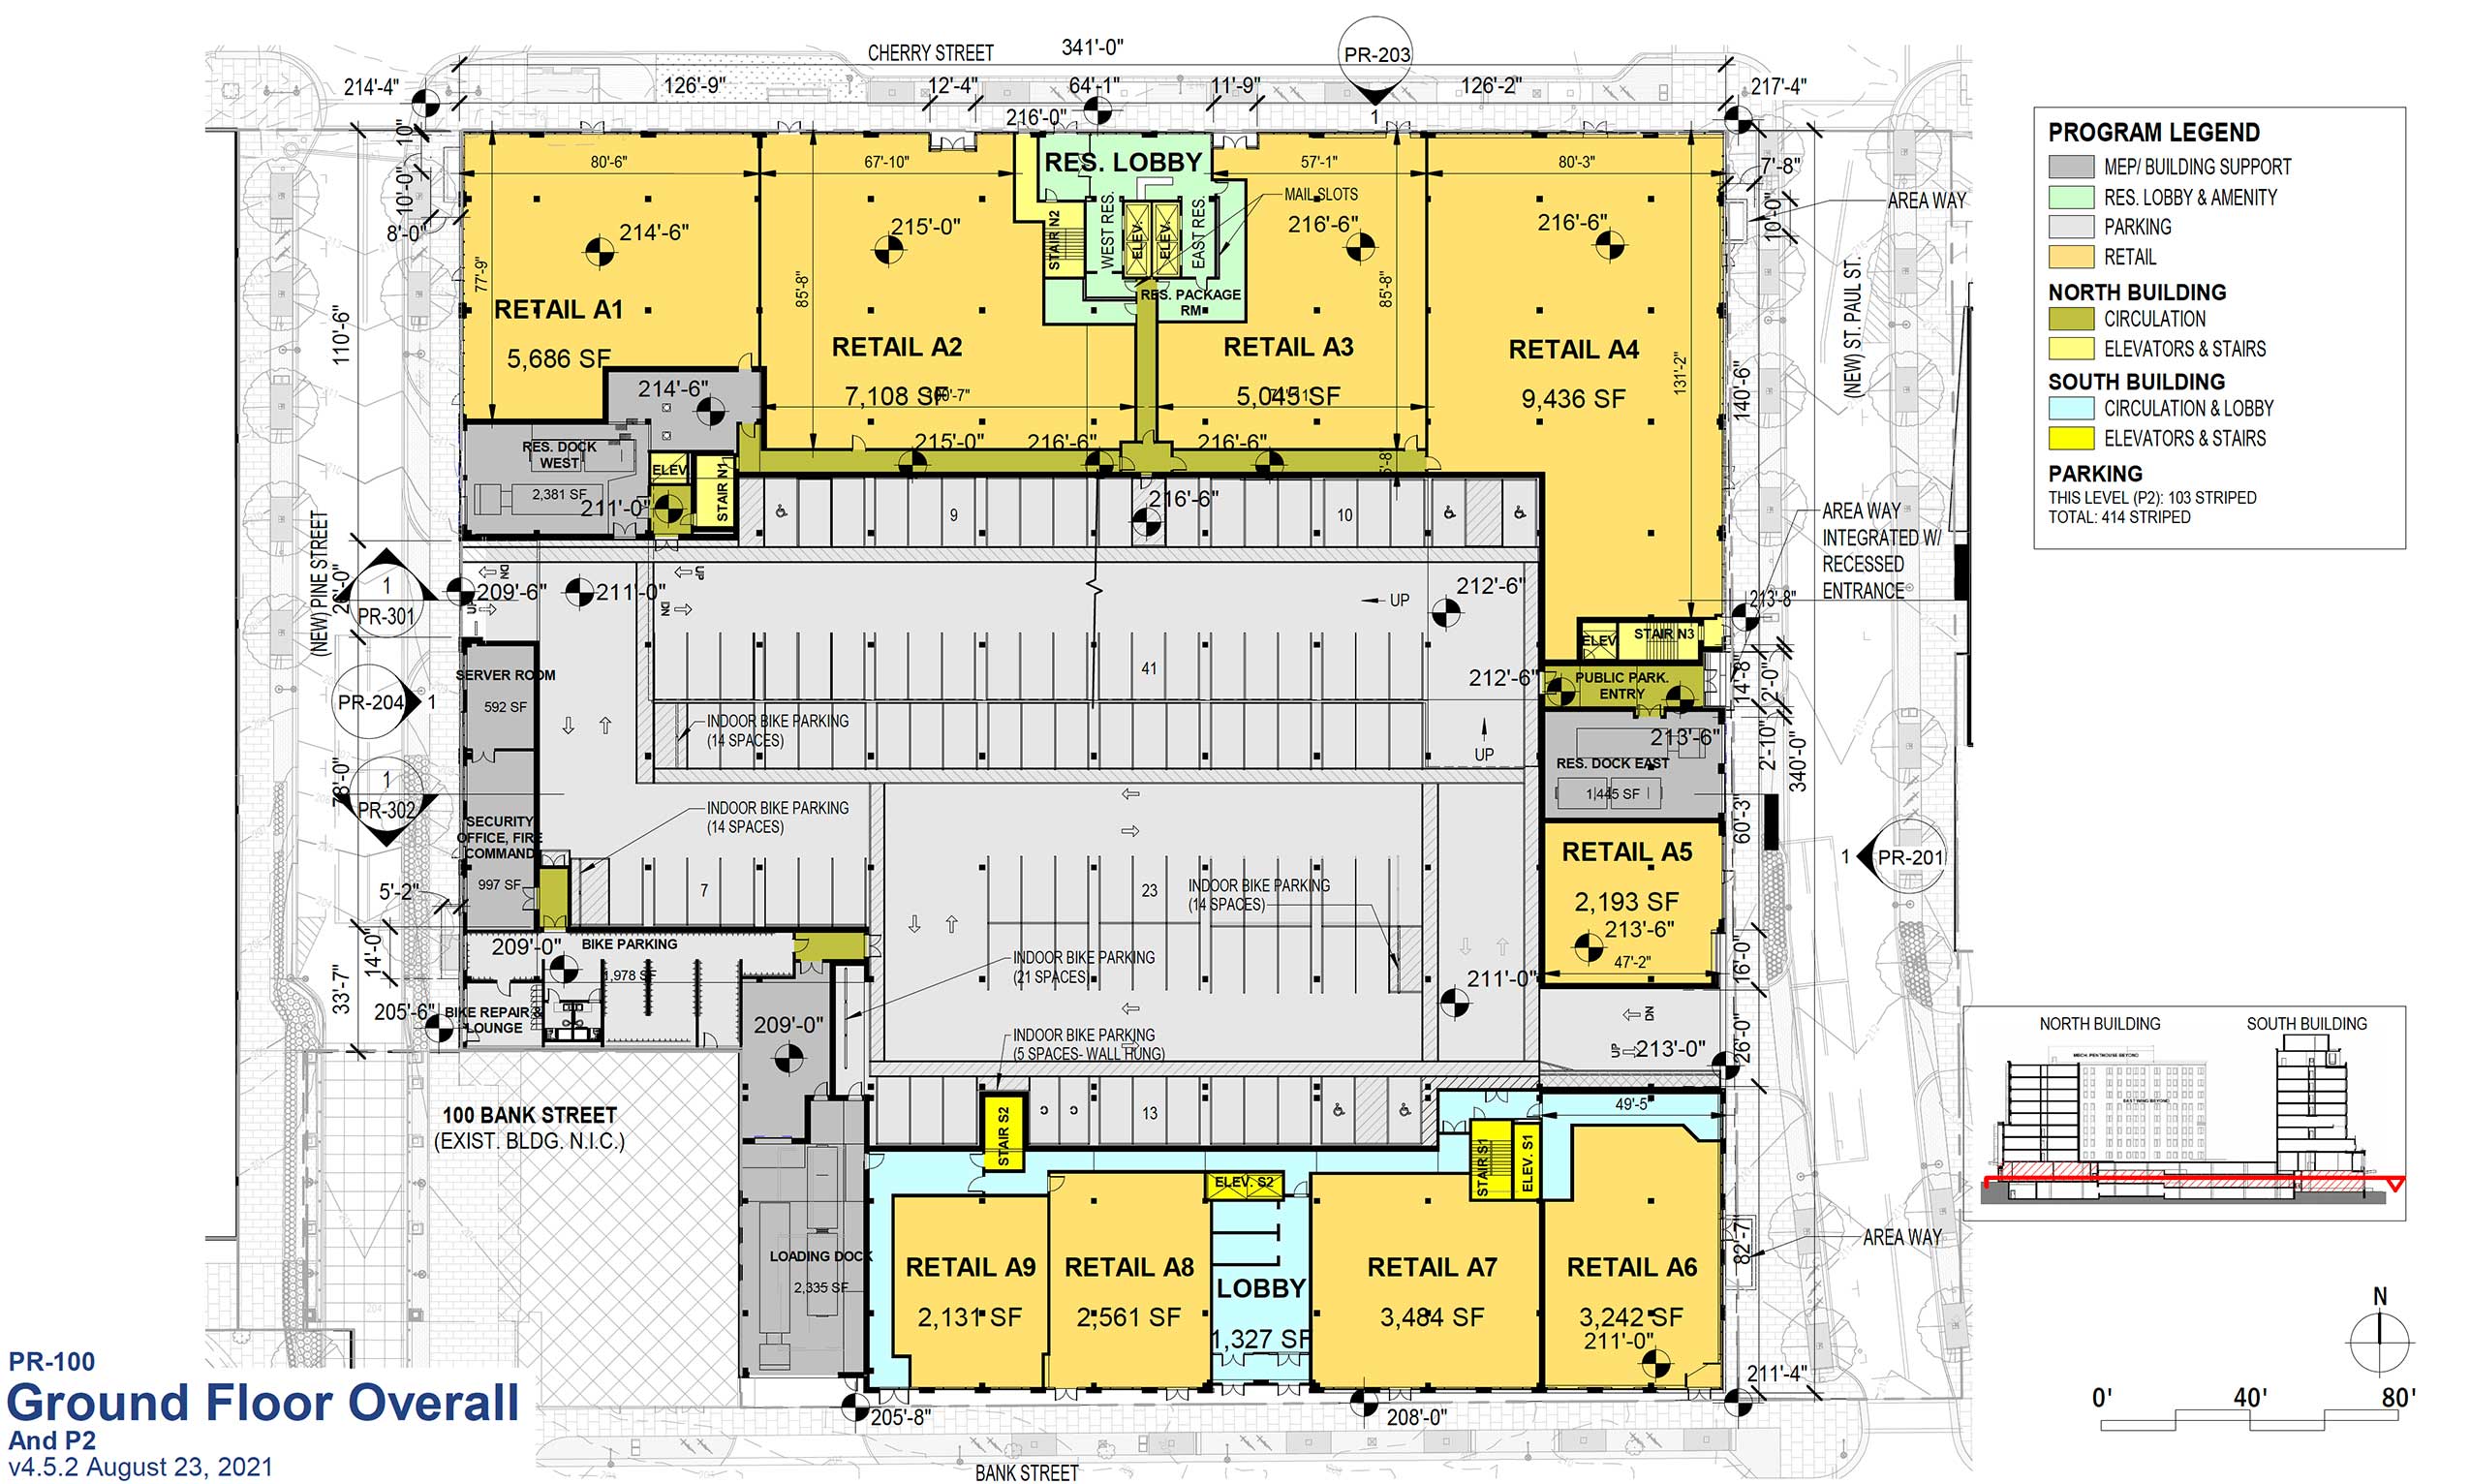 CityPlace Burlington 2021 floor plan PR-100 Ground Floor Retail and Parking